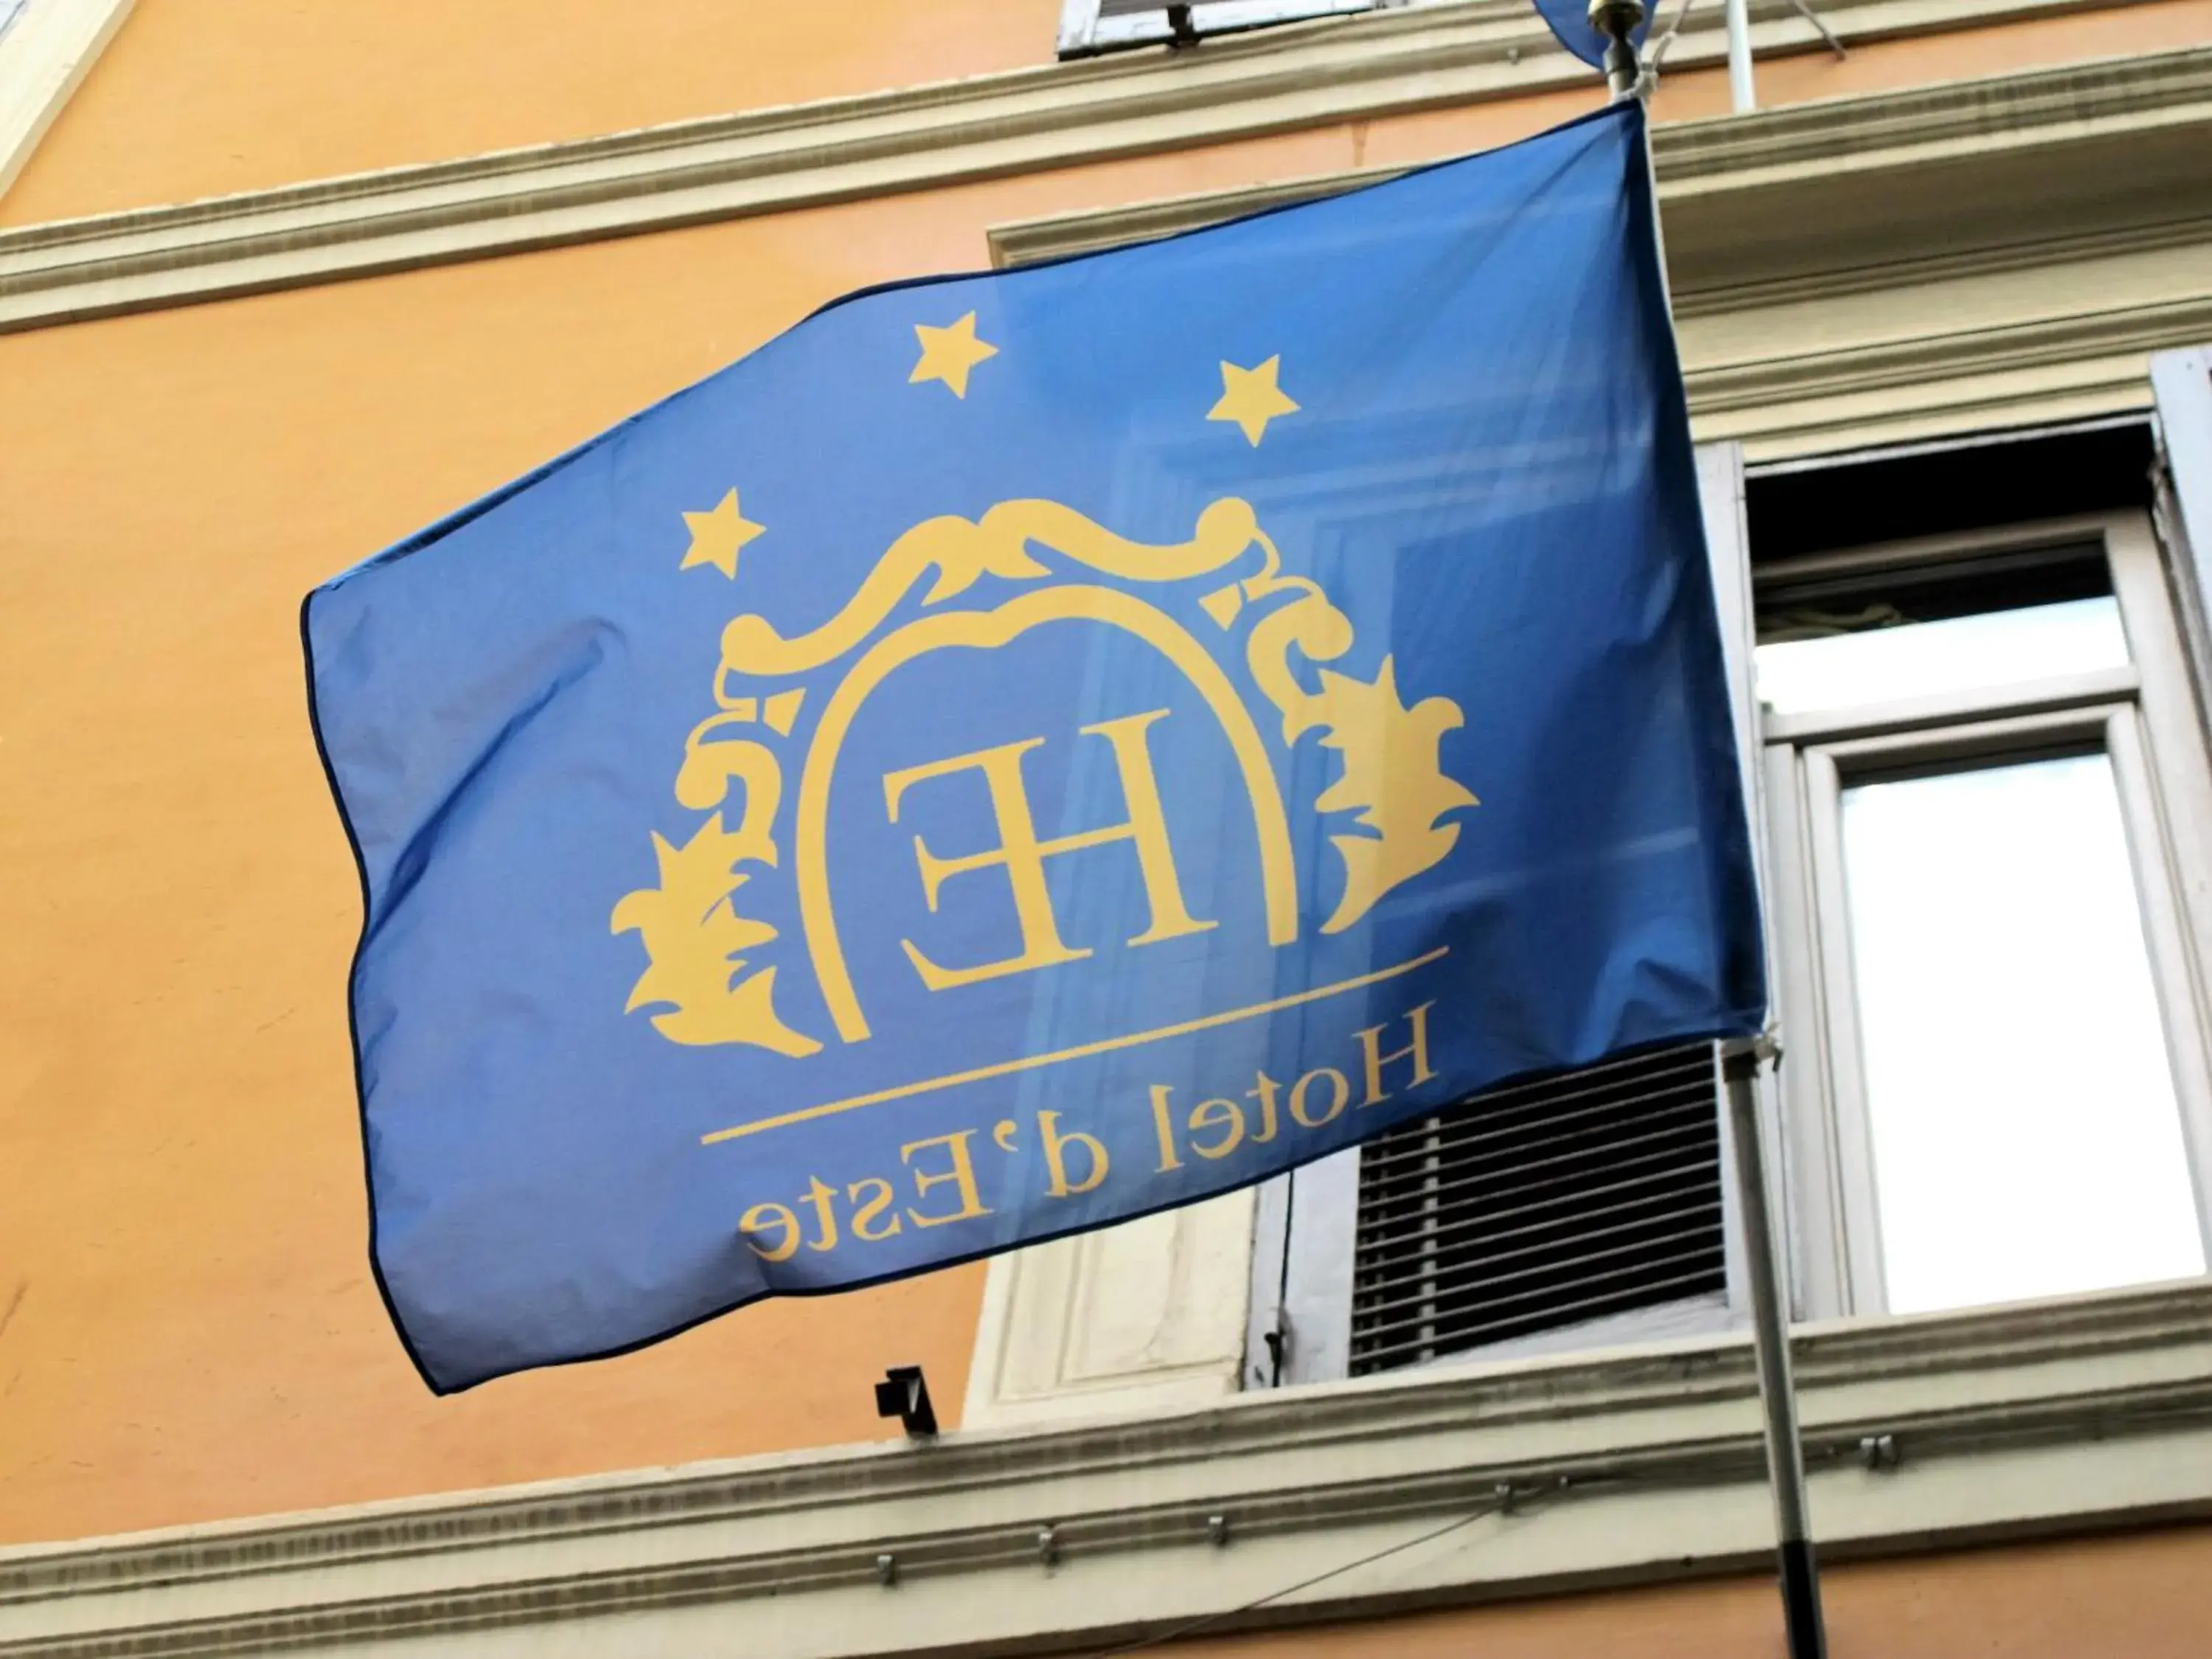 Property logo or sign in Hotel d'Este